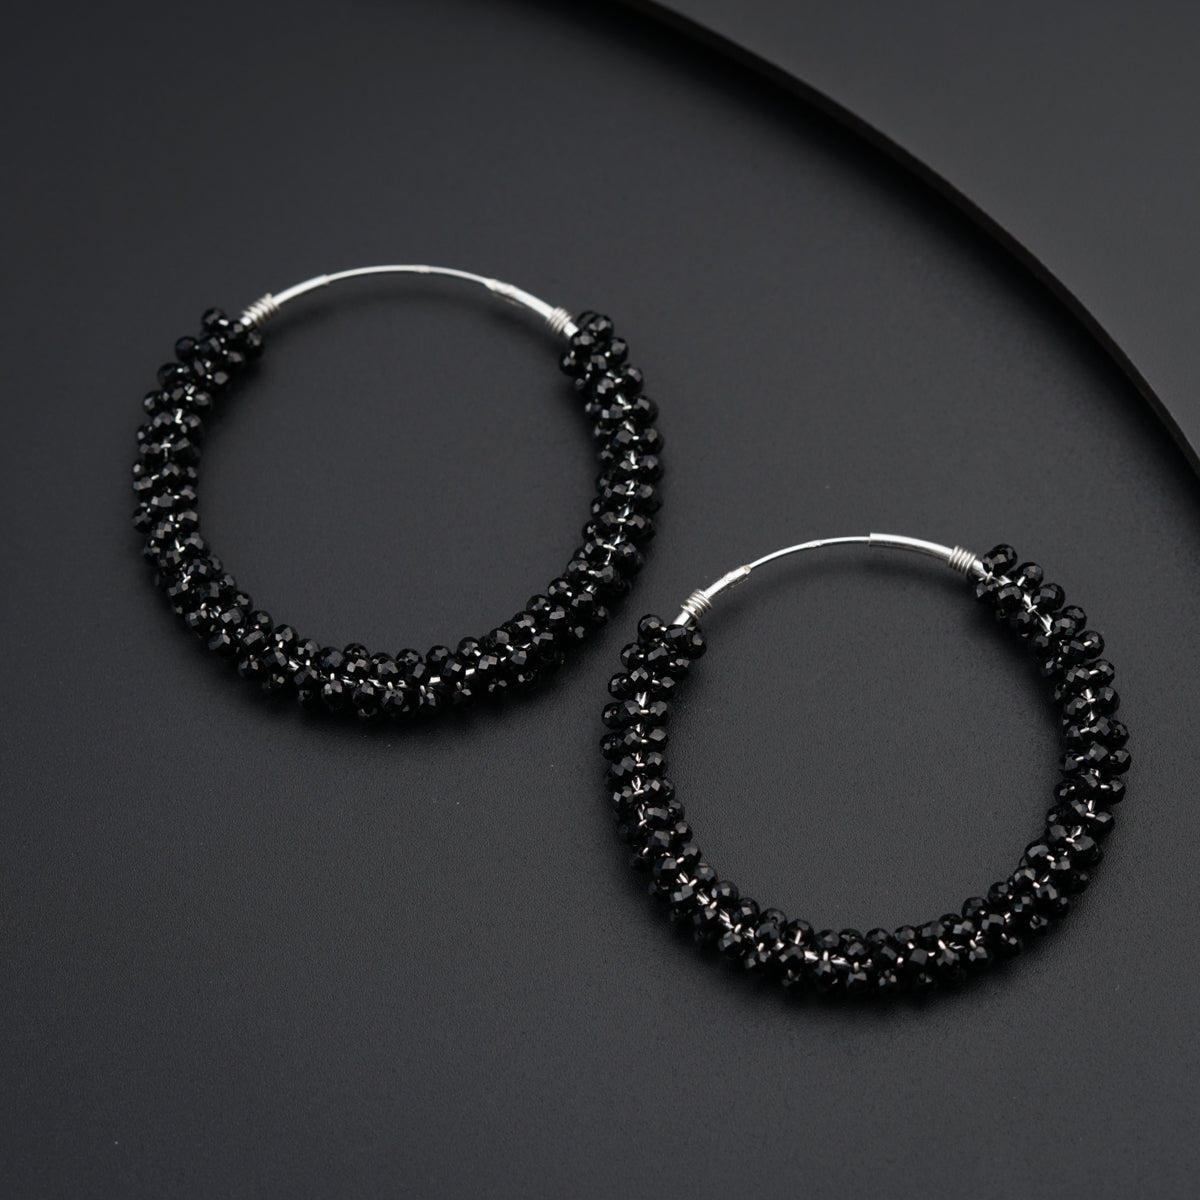 Stainless Steel Punk Black Earrings Men Women Ear Stud Hoop Dangle Jewelry  Gift | eBay